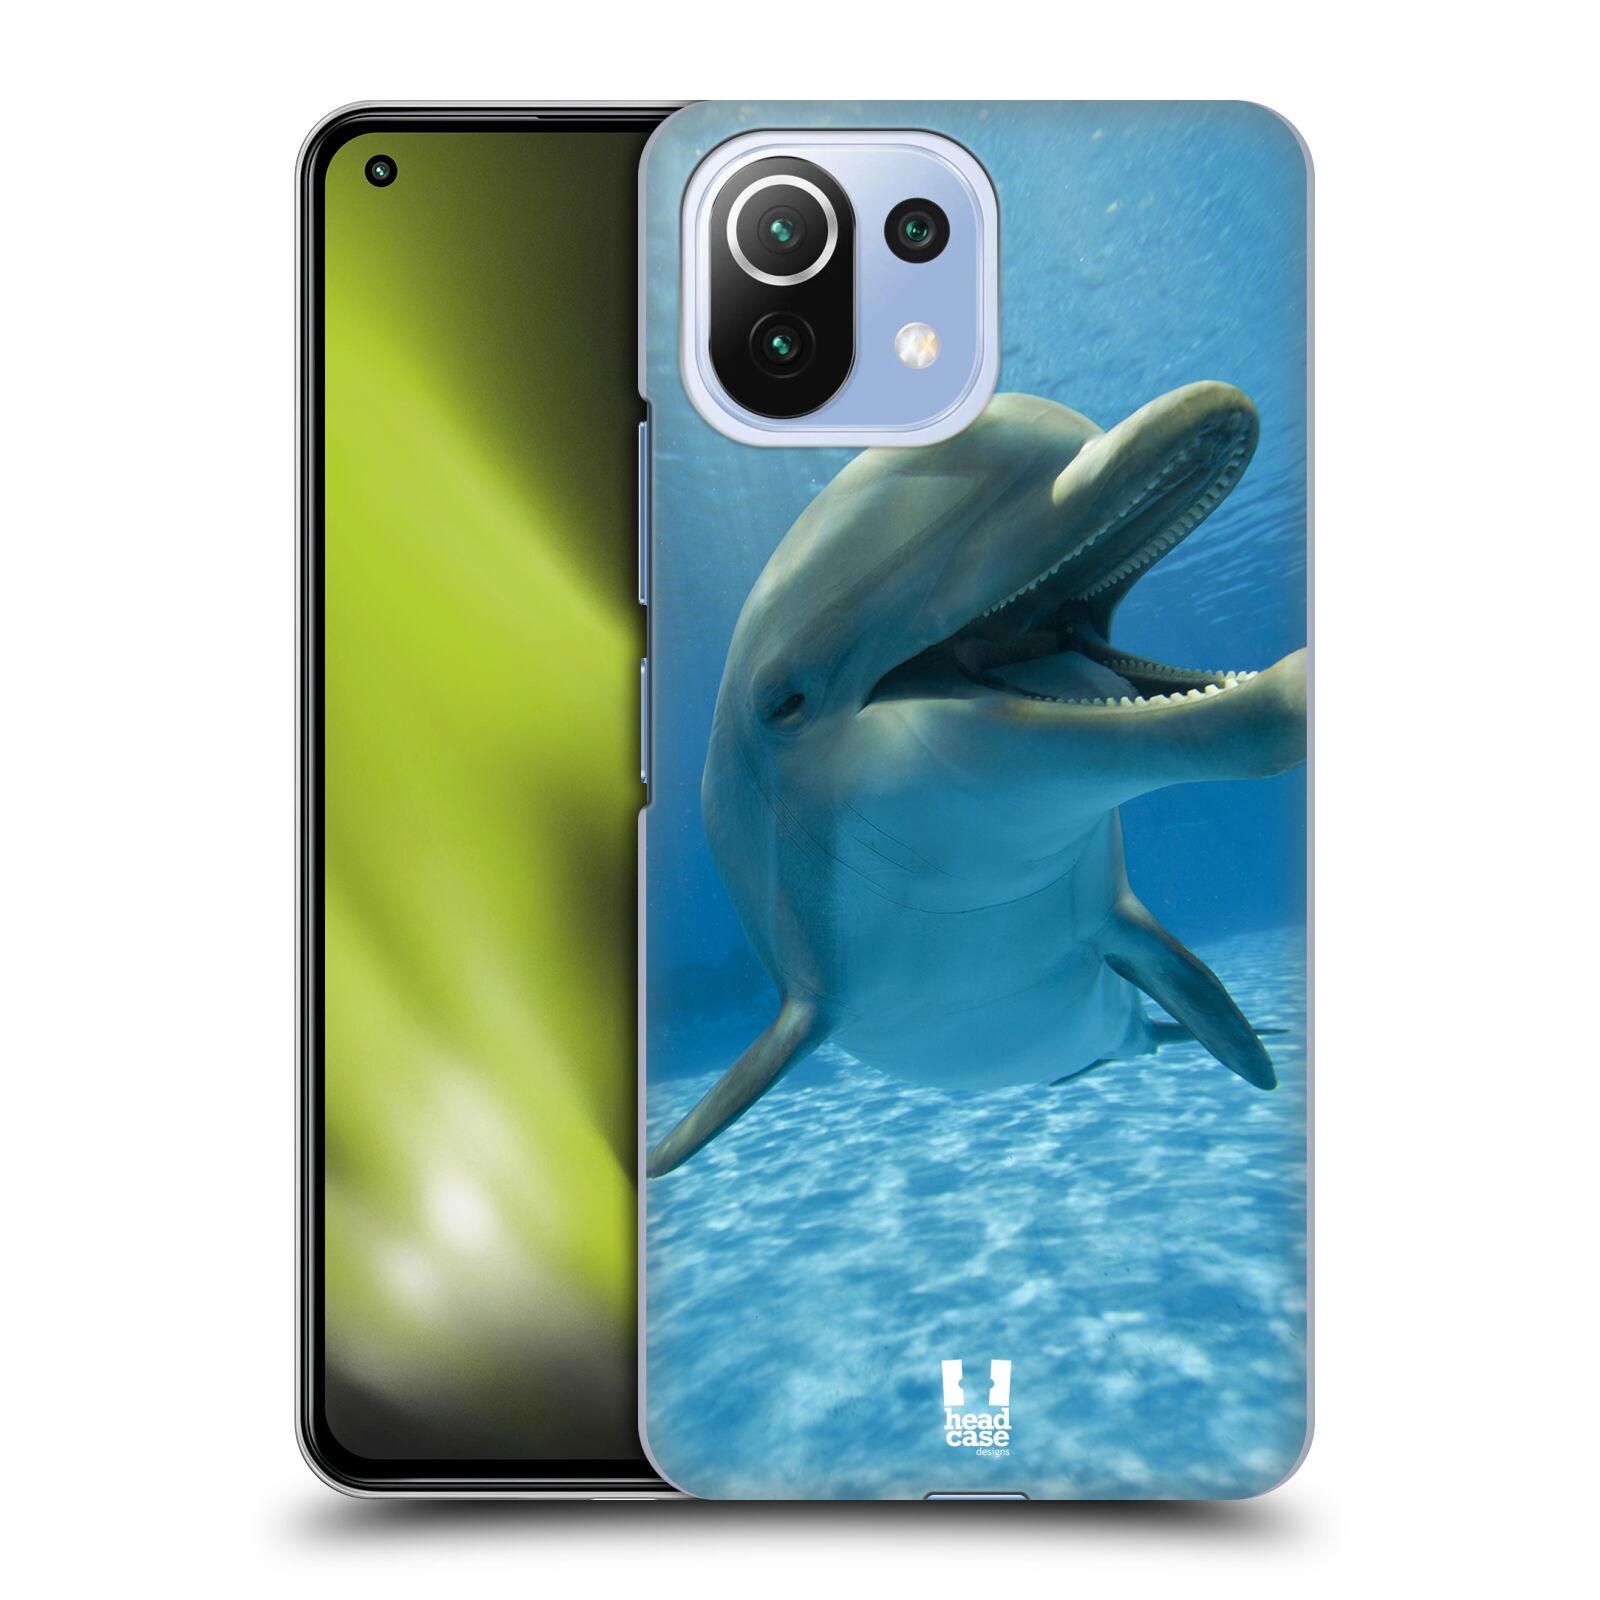 Zadní obal pro mobil Xiaomi Mi 11 Lite / Mi 11 Lite 5G - HEAD CASE - Svět zvířat delfín v moři